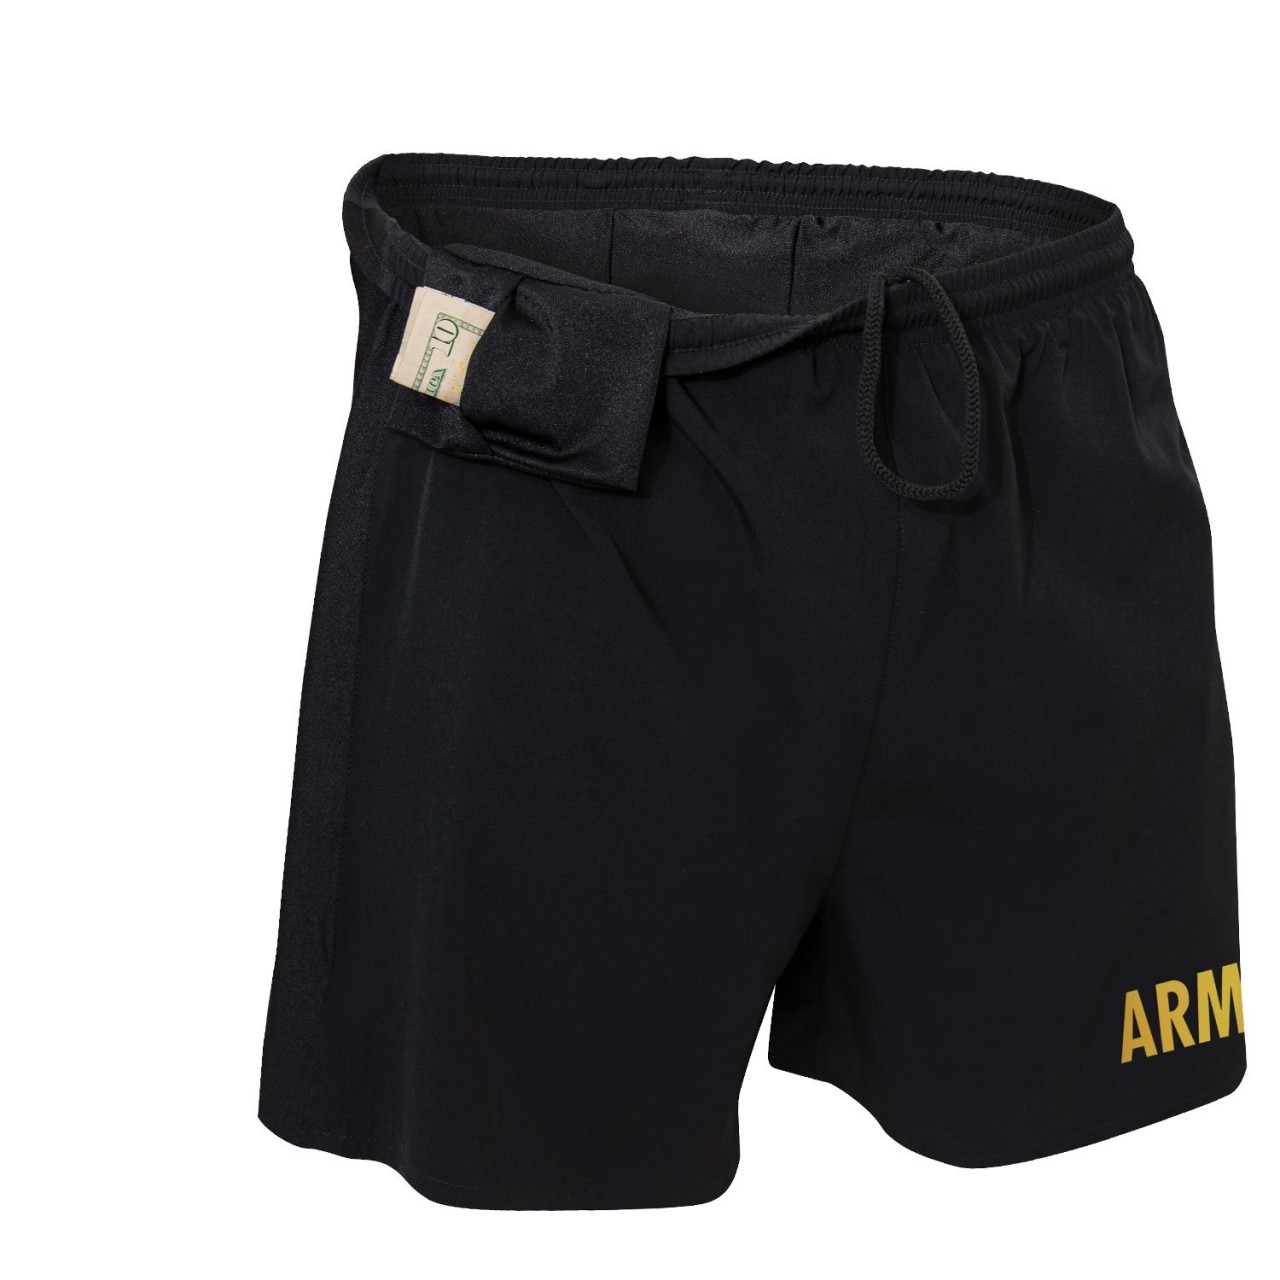 Nohavice krátke s nápisom ARMY ČIERNE